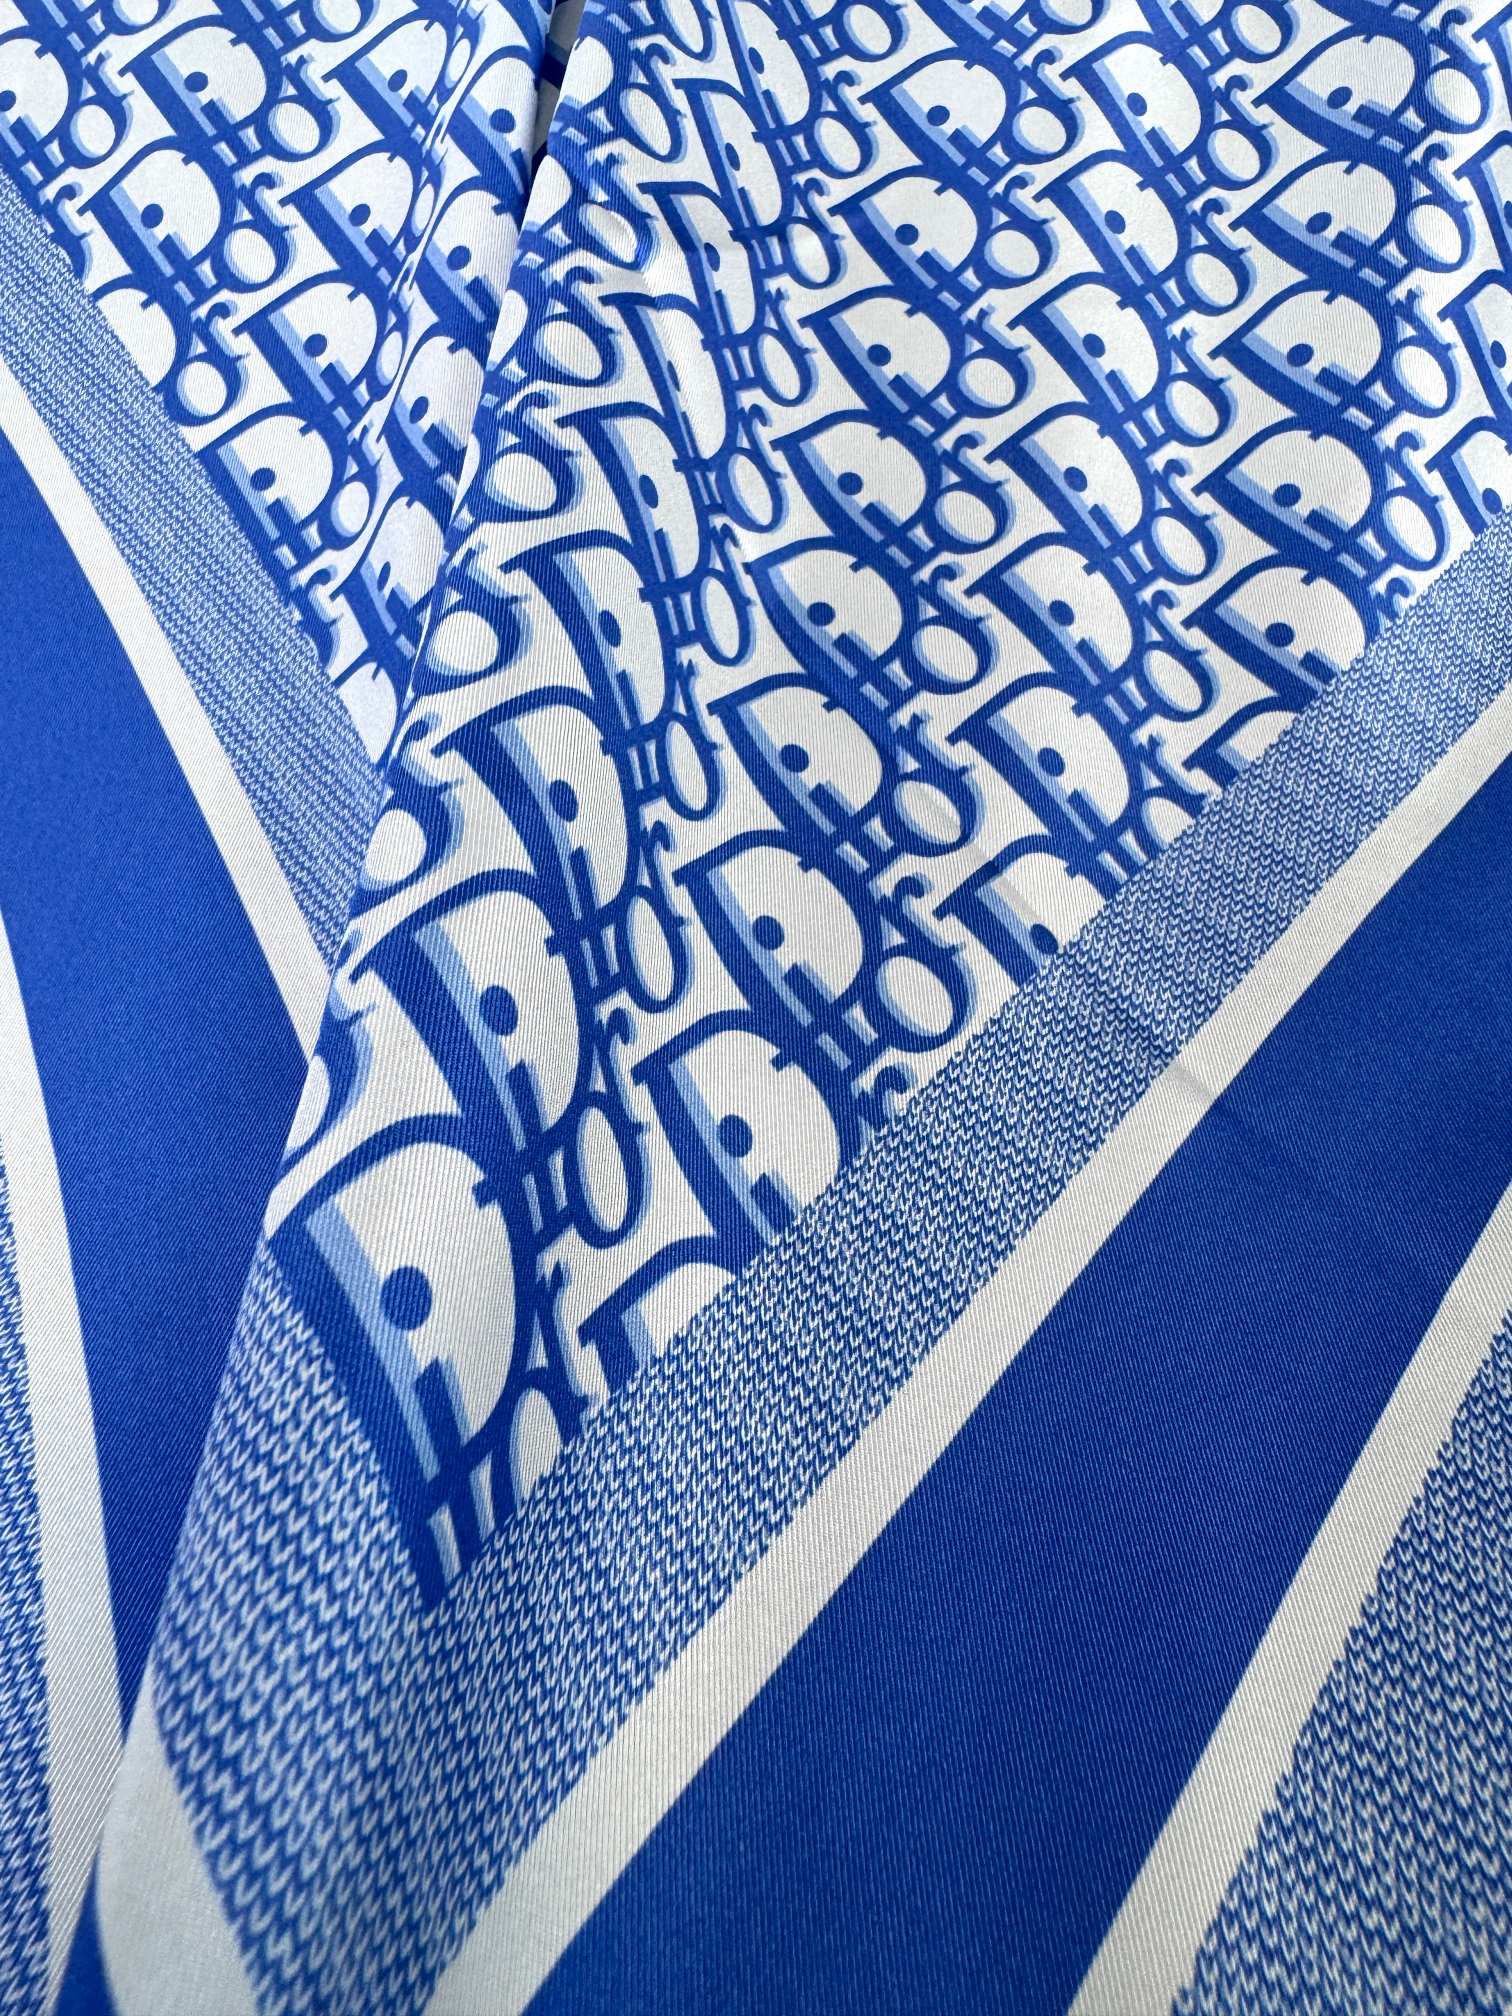 品名:流金字母面料真丝尺寸90*90颜色海军蓝灰色浅蓝这款酒红色方巾以品牌标志性的Oblique印花装饰